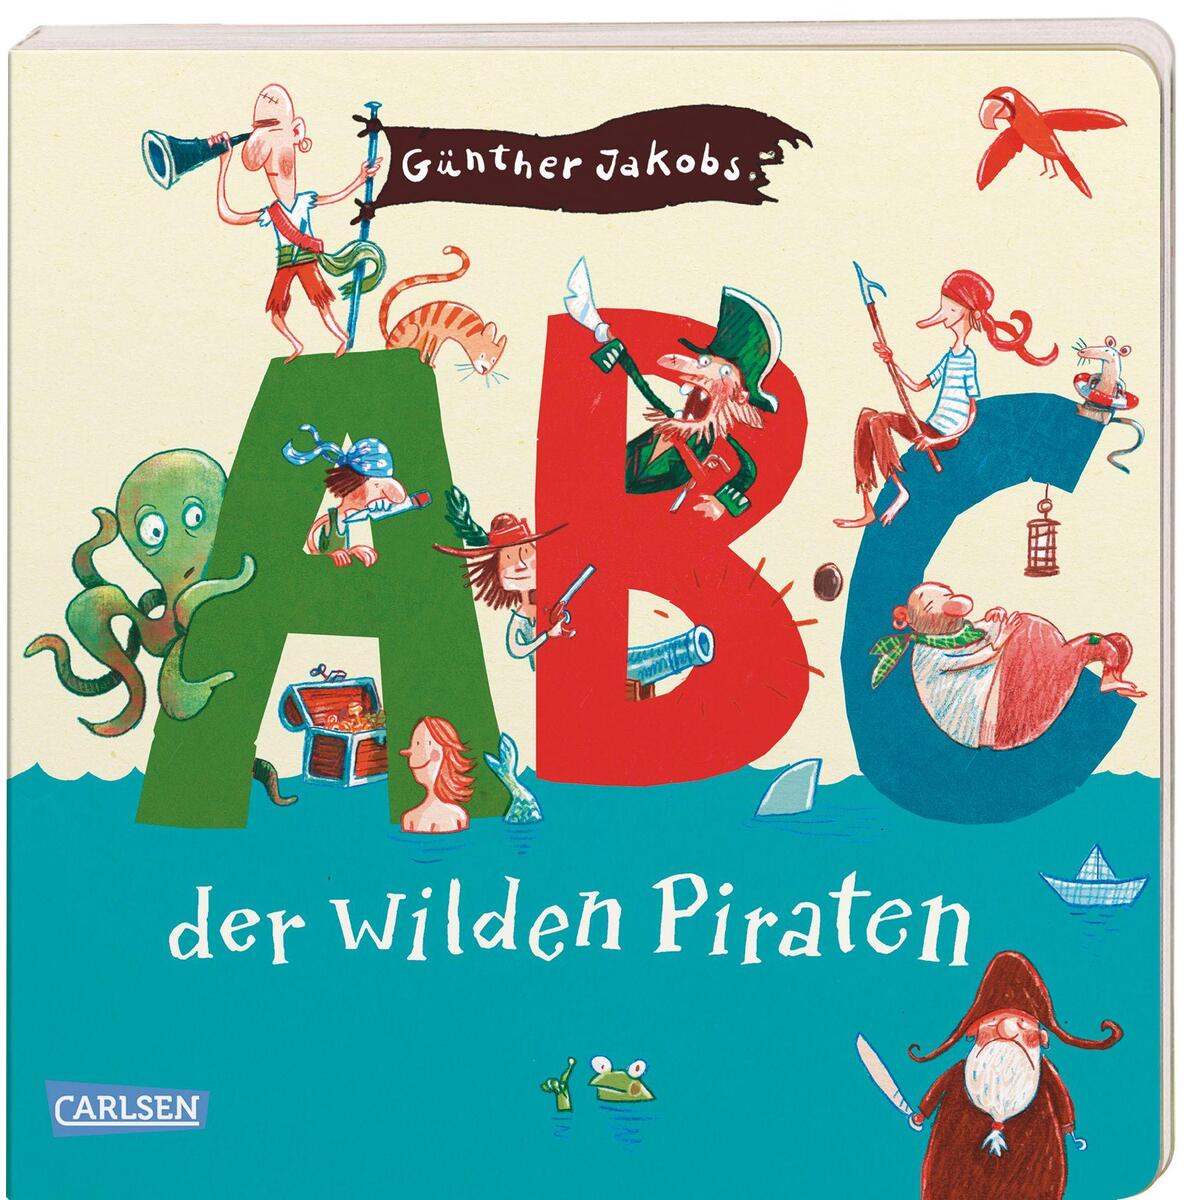 Die Großen Kleinen: ABC der wilden Piraten von Carlsen Verlag GmbH